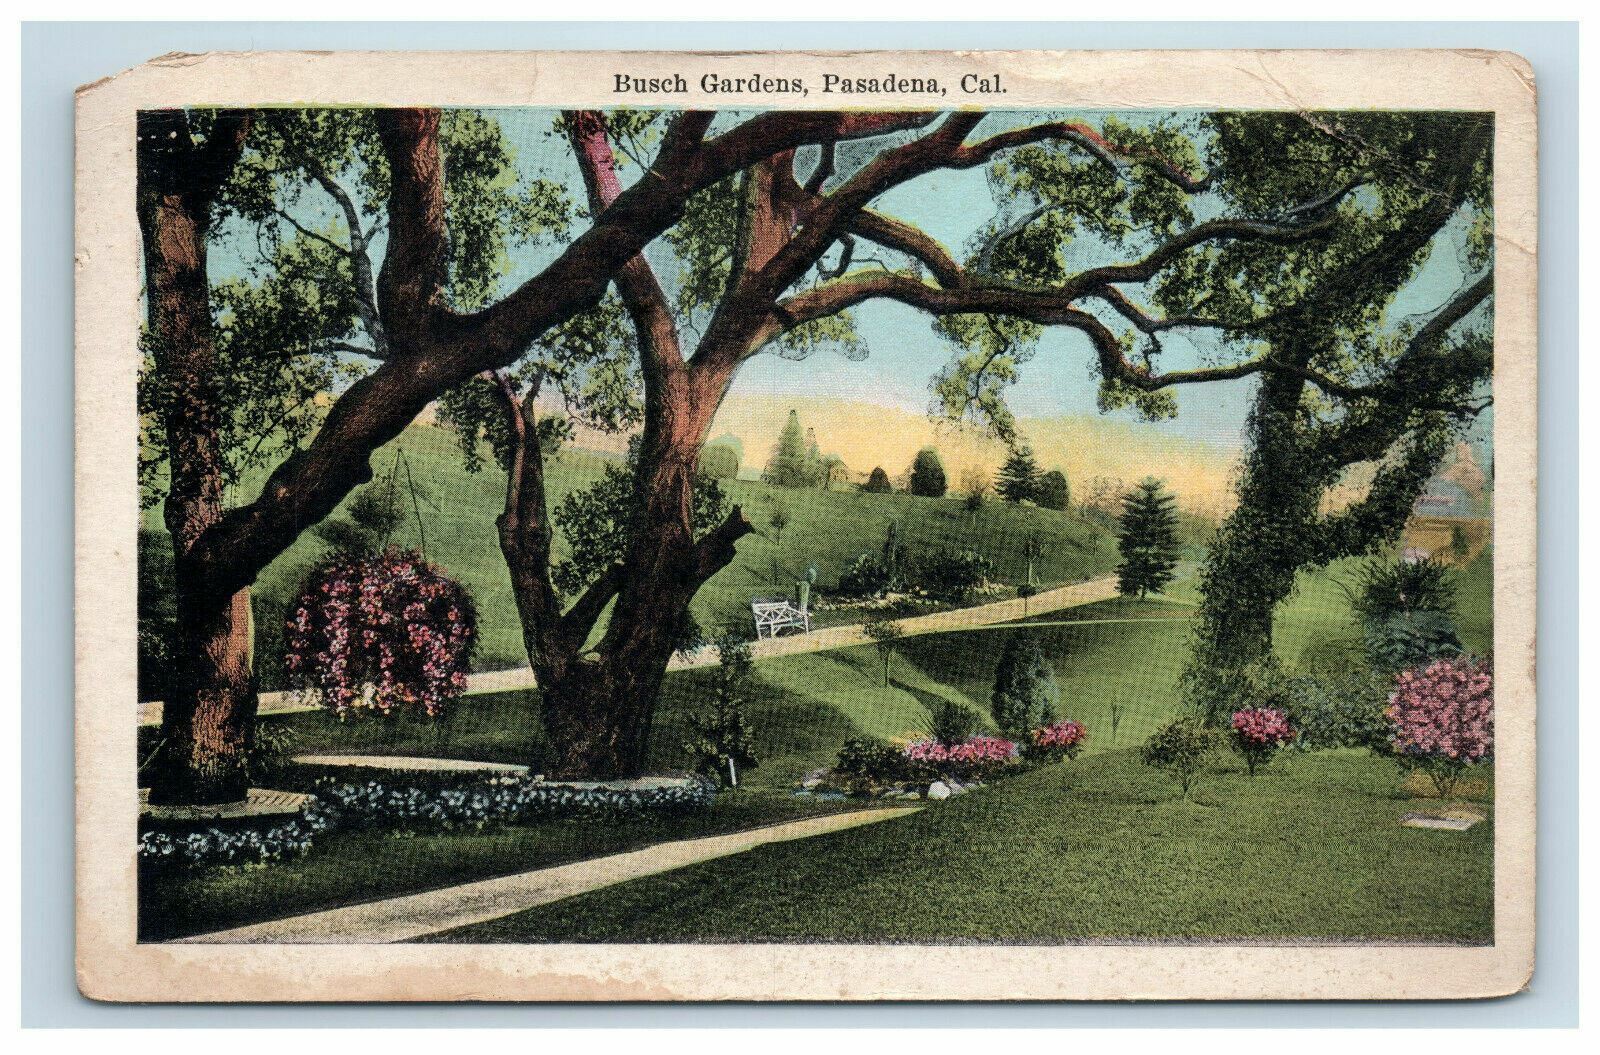 1921 Busch Gardens Pasadena California Postcard Postmark